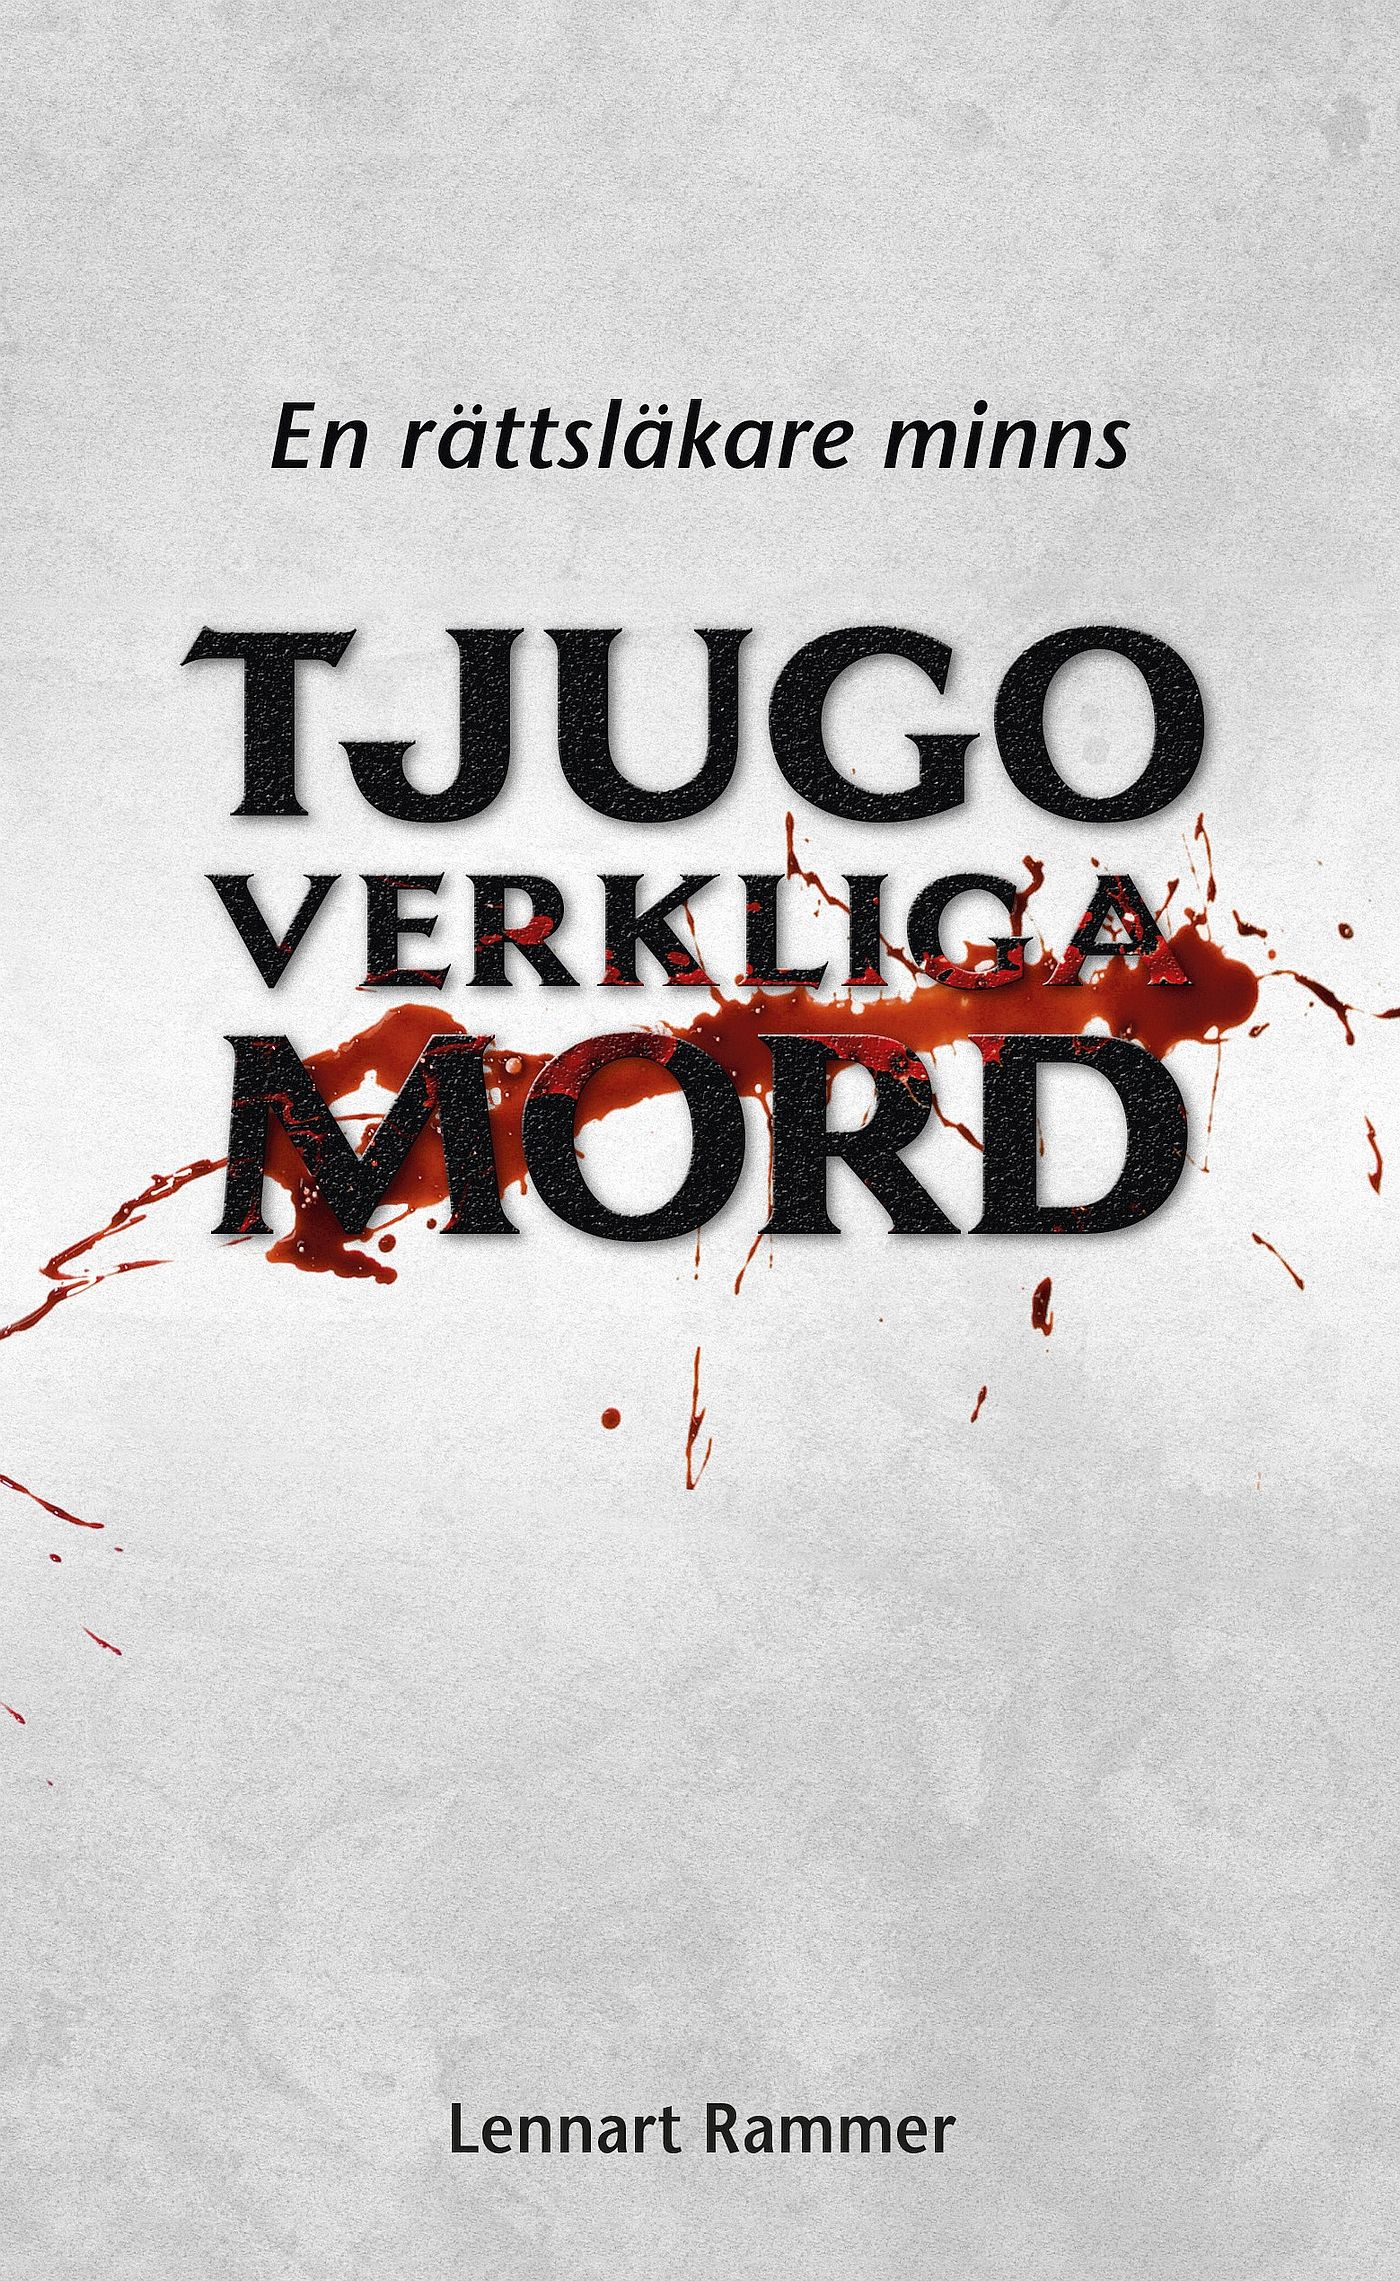 Tjugo verkliga mord - En rättsläkare minns, e-bog af Lennart Rammer